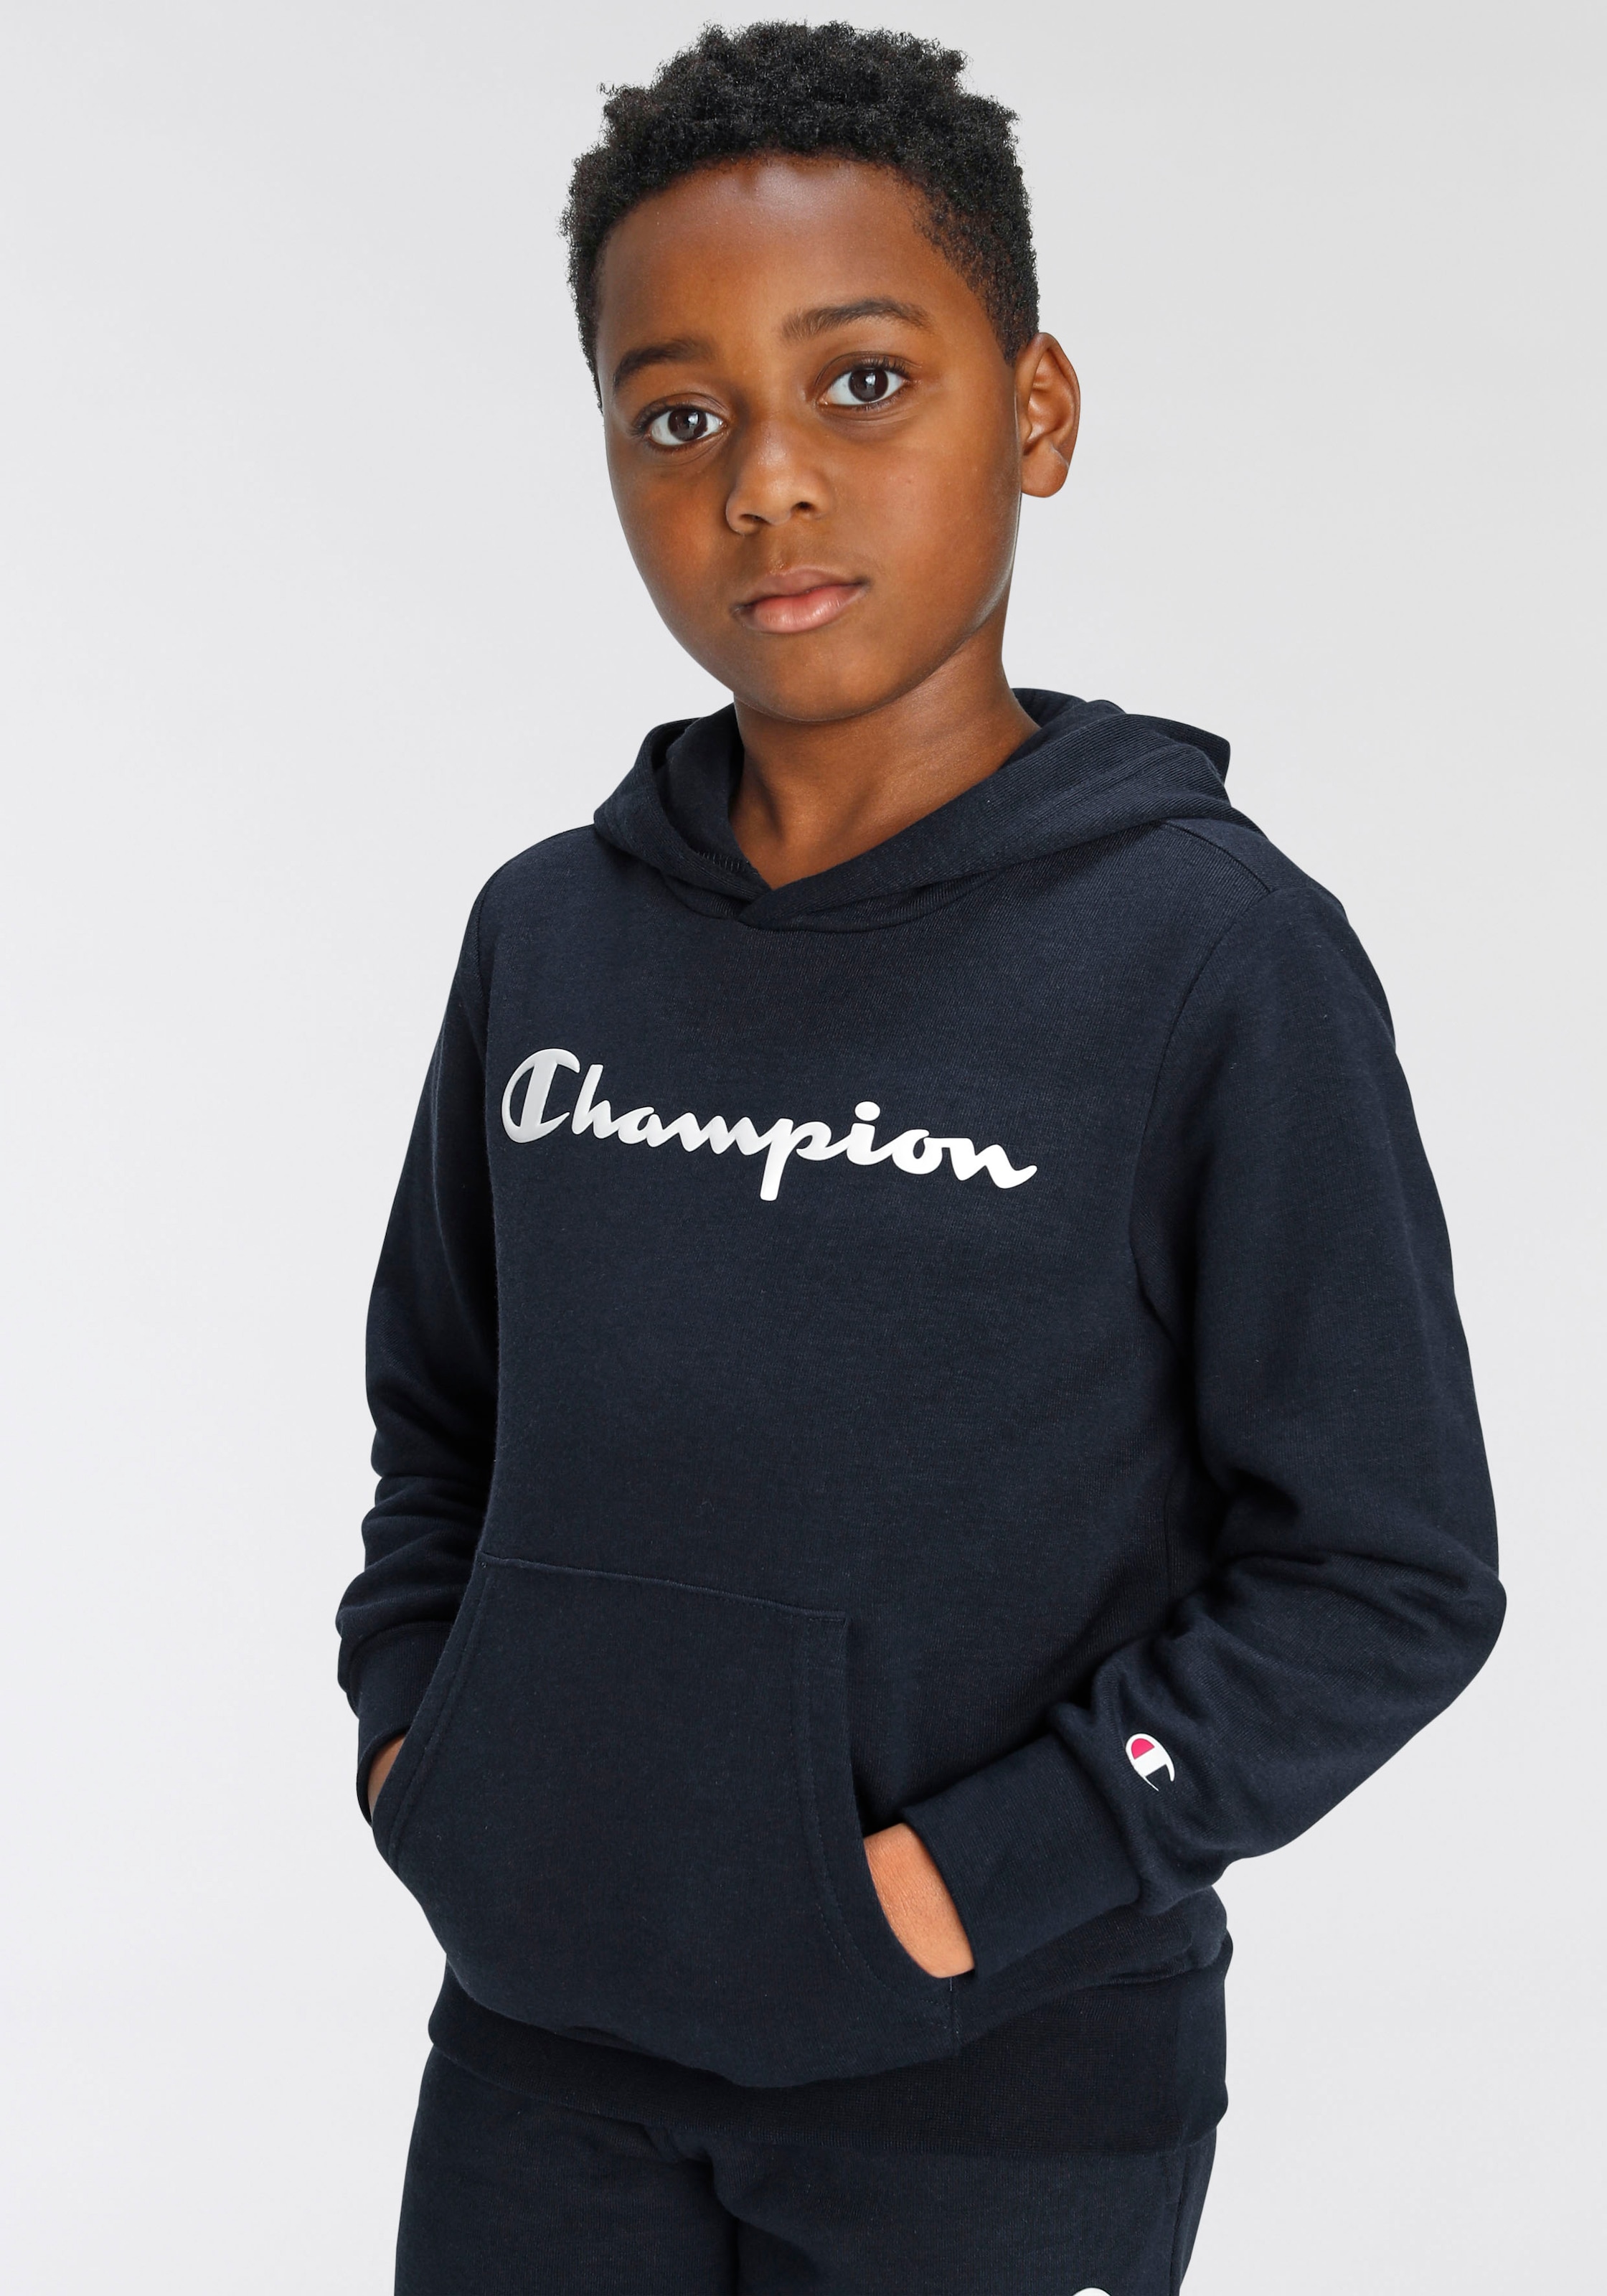 Champion Sweatshirt im OTTO Online Shop